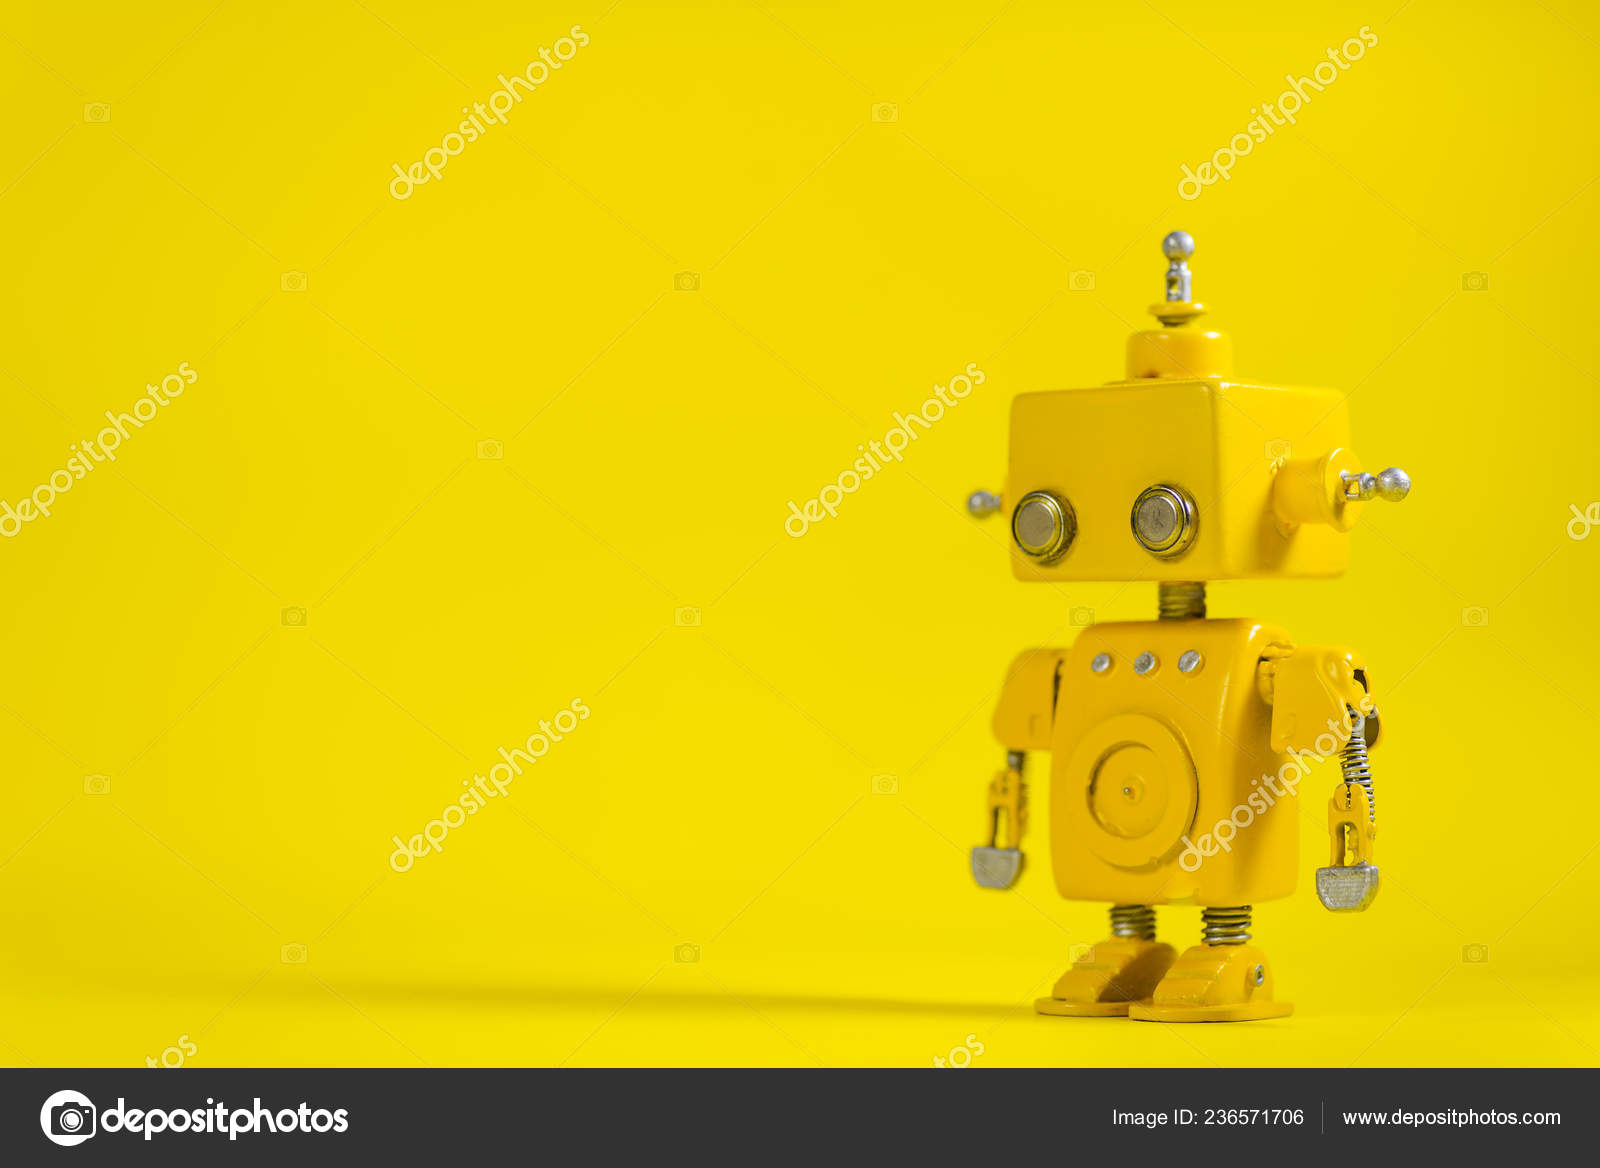 Robot handmade: Nếu bạn quan tâm đến thiết kế và làm thủ công, bạn không nên bỏ qua bức ảnh này. Một con robot được làm hoàn toàn bằng tay sẽ khiến bạn cảm thấy kinh ngạc với sự tinh xảo và độ chân thực của nó.